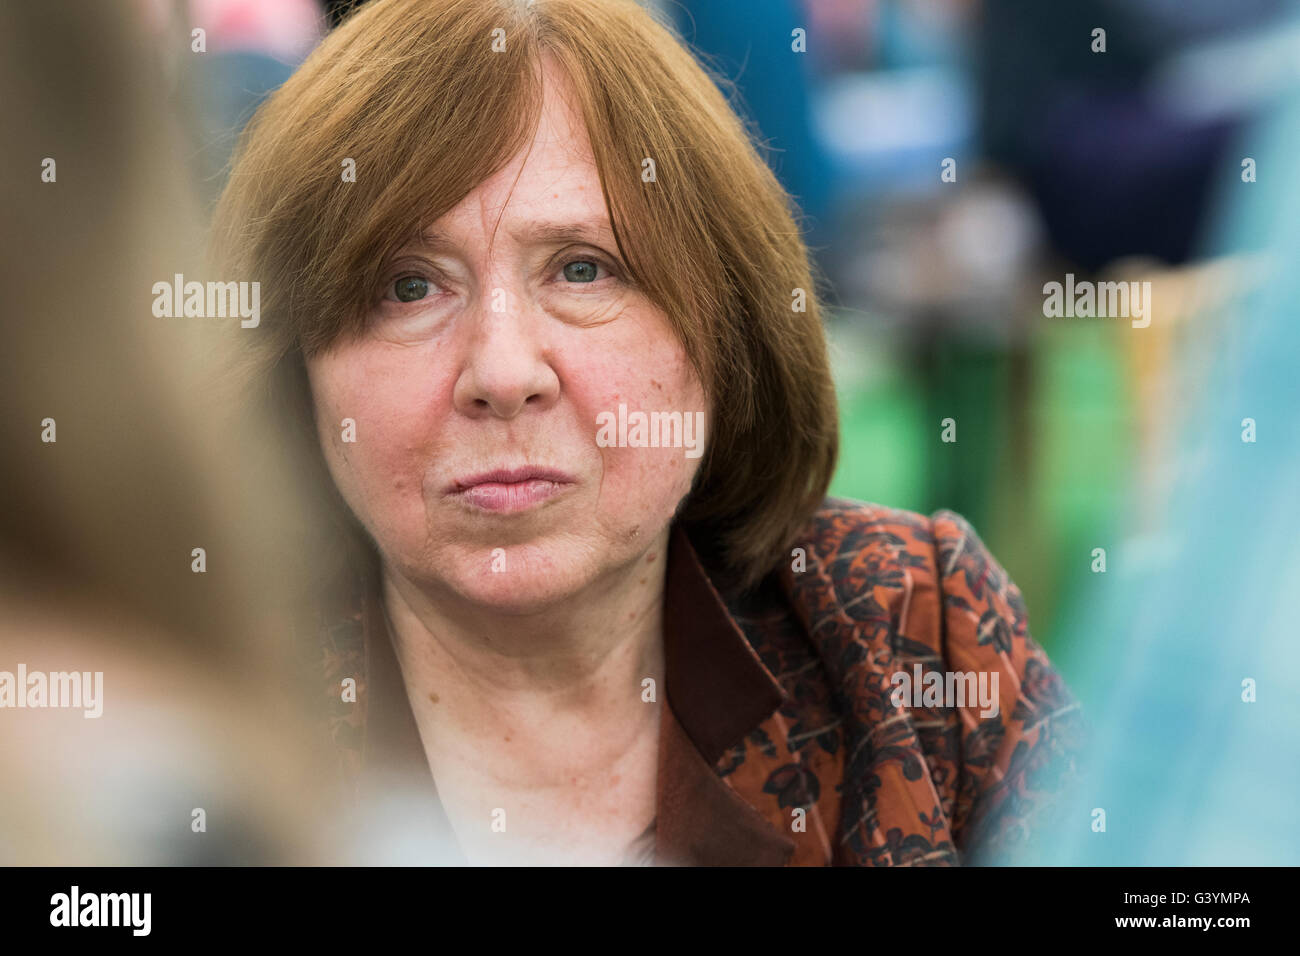 Svetlana Alexievich, bielorusso giornalista investigativo e non-fiction prosatore , premio Nobel per la Letteratura, 2015. Presso il Festival di fieno, Sabato 28 Maggio 2016 Foto Stock